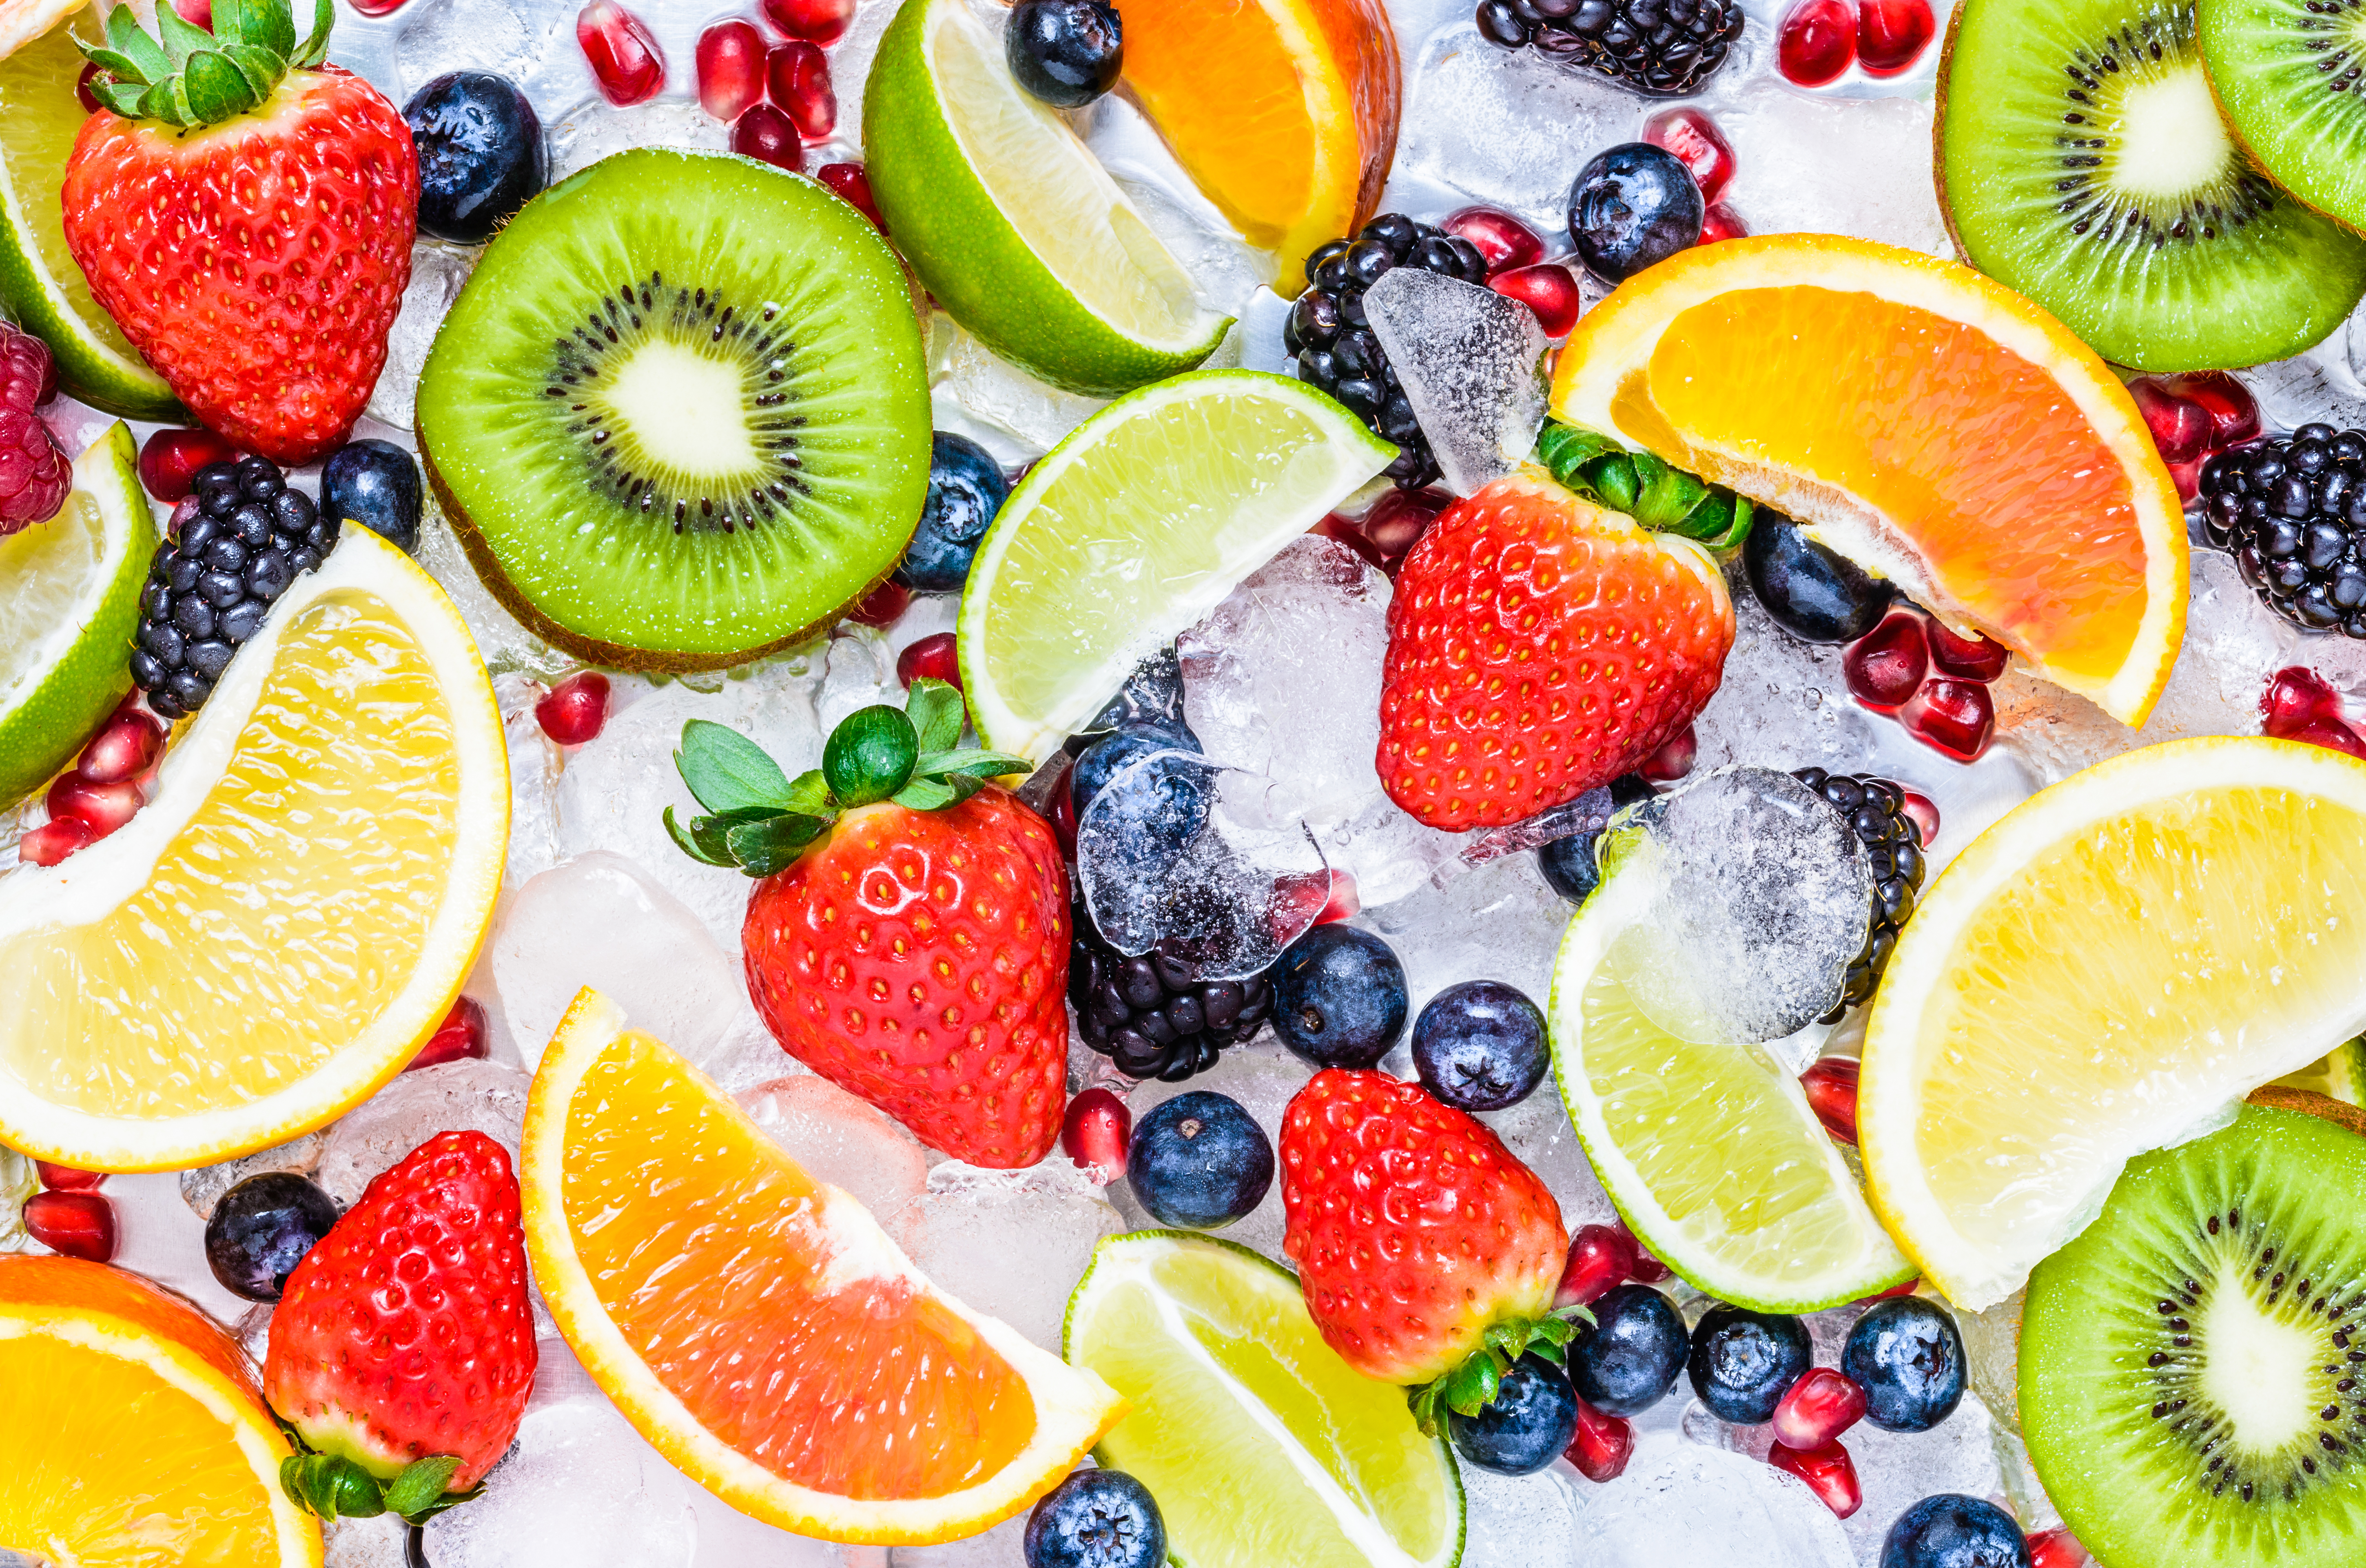 Aquellas personas que consumen frutas y verduras viven más que otras que no incorporan estos alimentos en sus dietas (Foto: Shutterstock/Leonori)